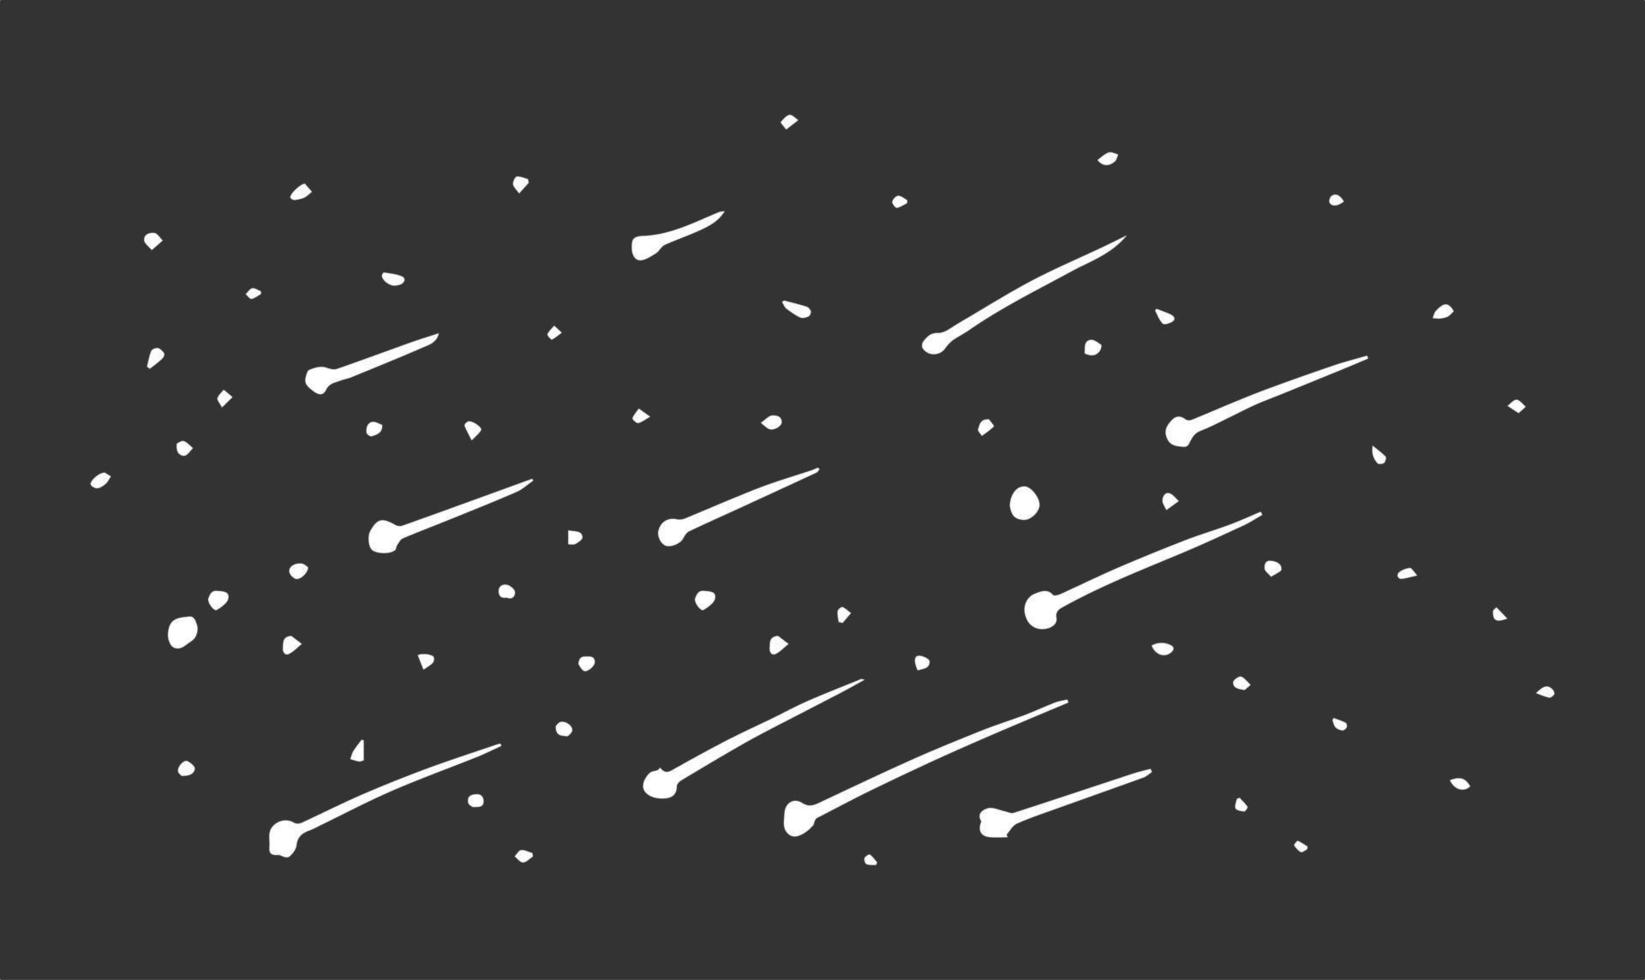 lluvia de meteoritos en la noche, ilustración vectorial. vector